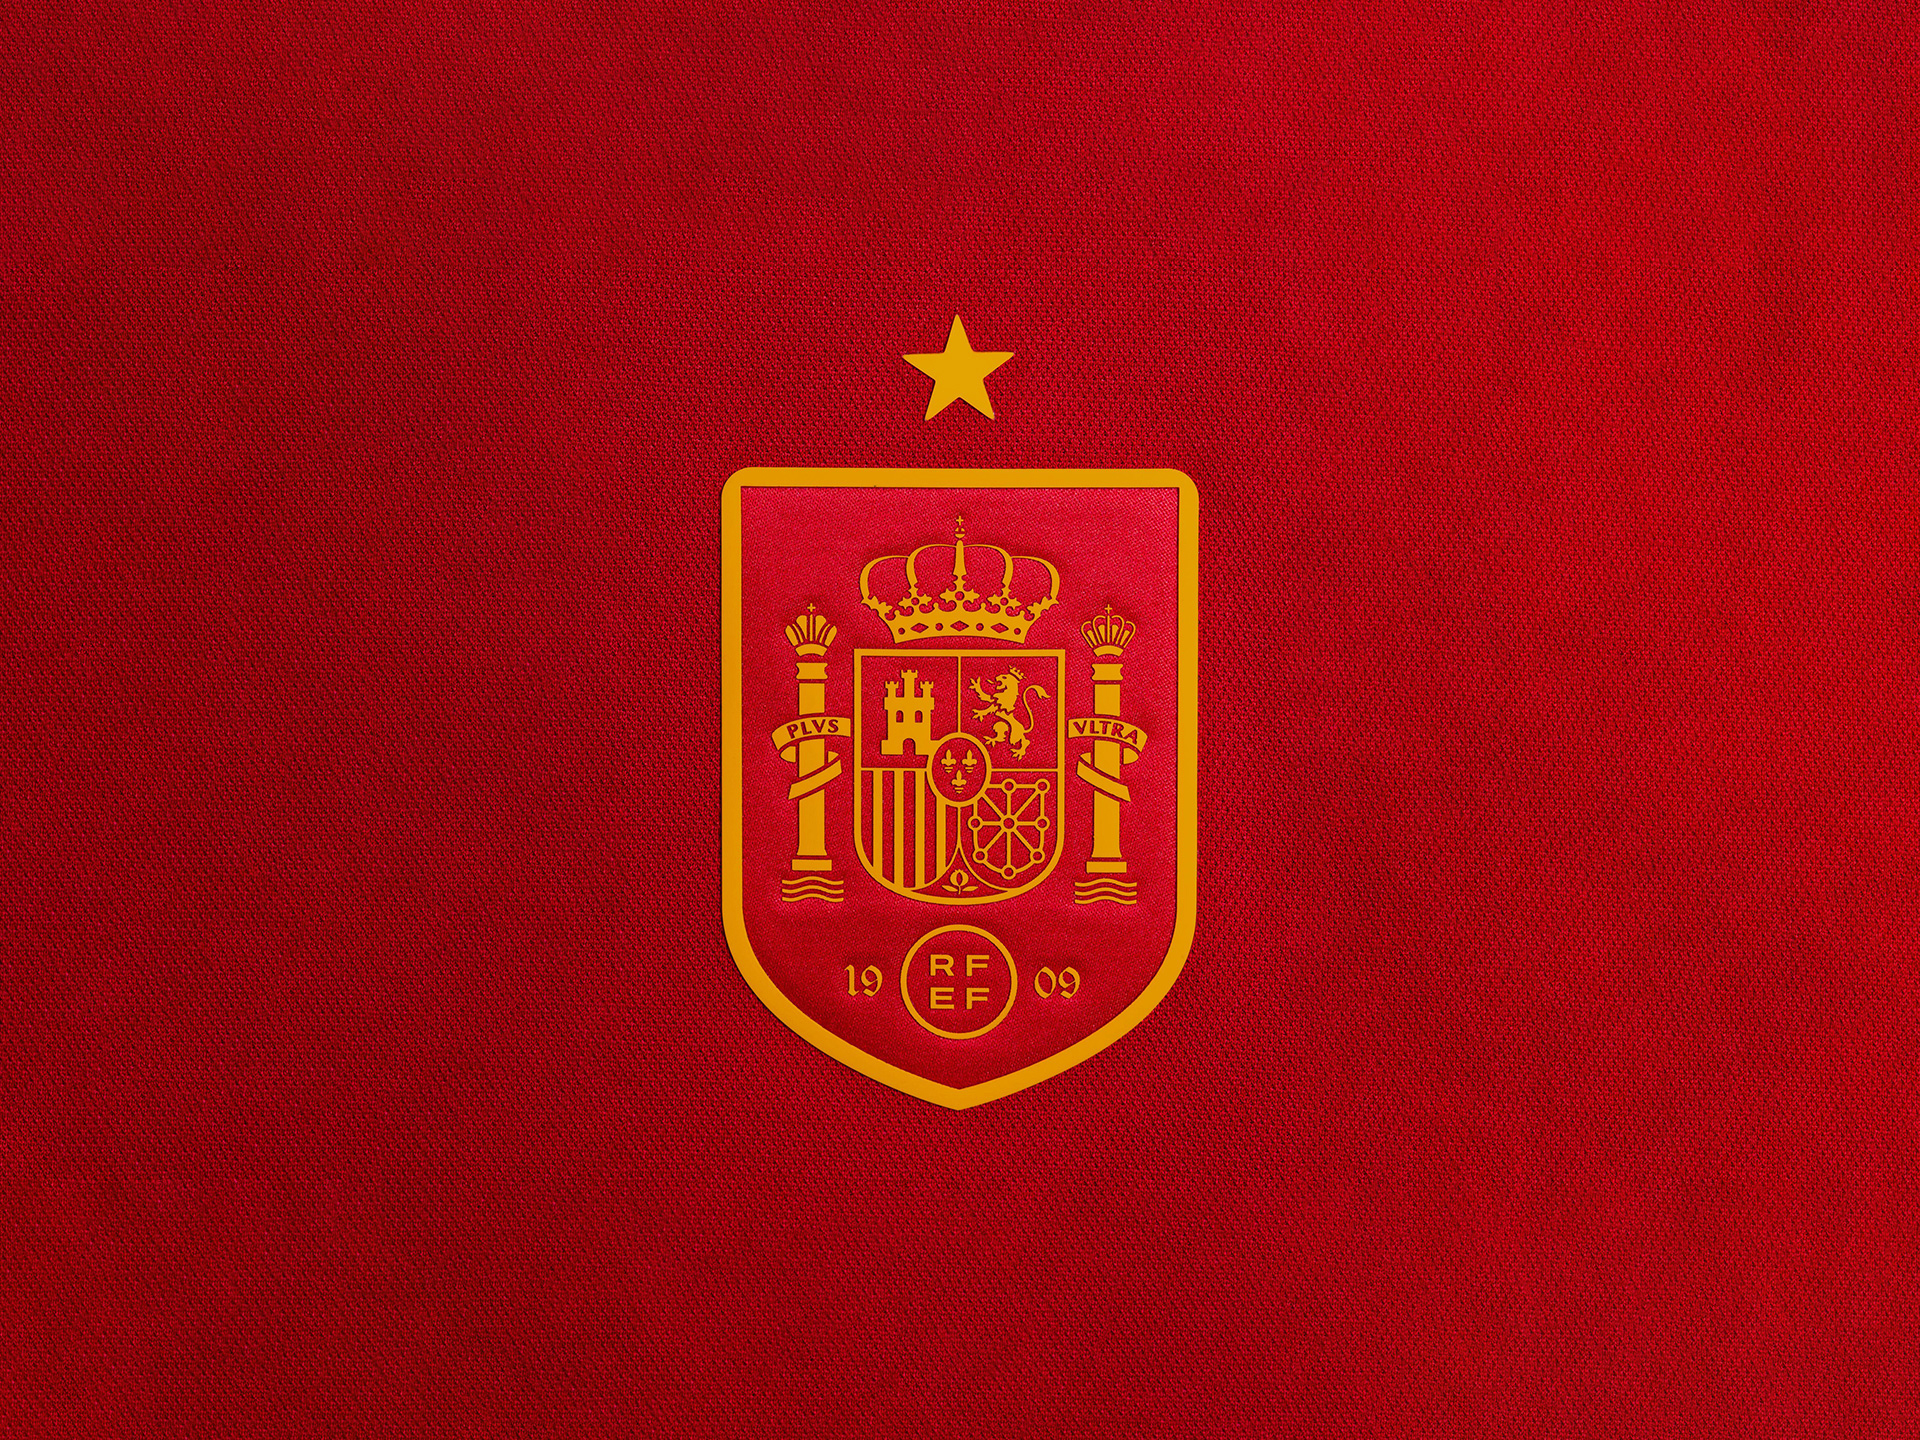 Escudo de la selección española